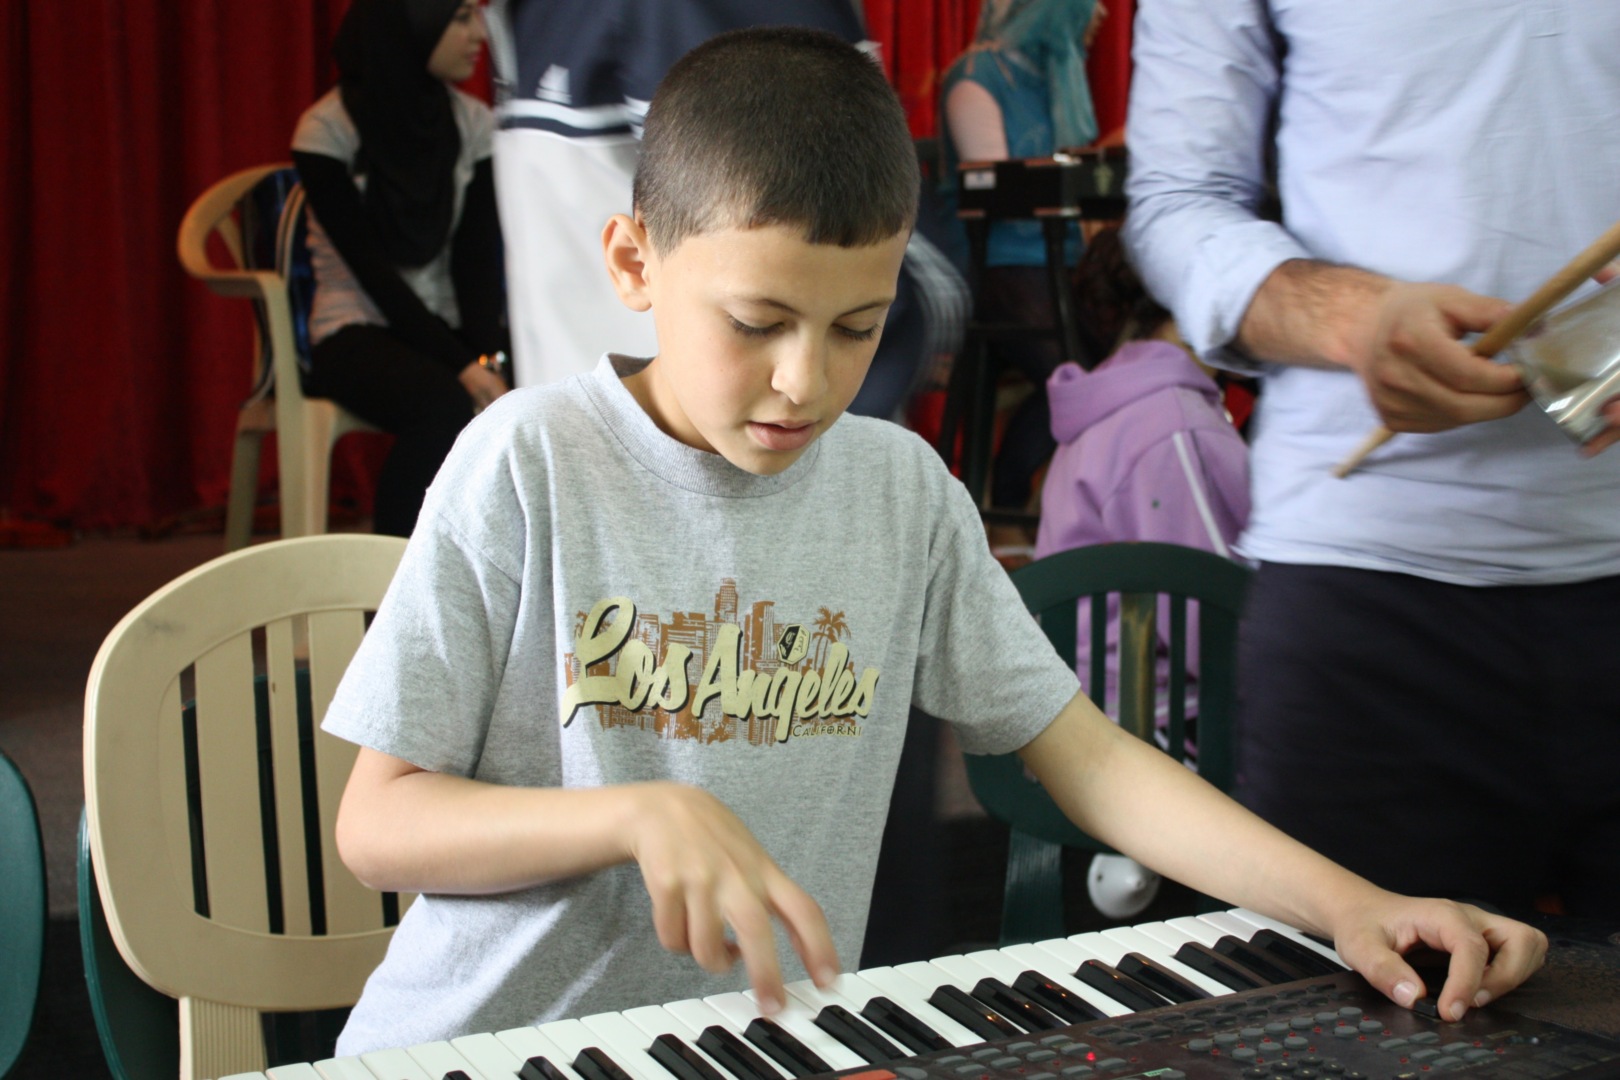 Musikk gir mening: Et eksempel på pianoundervisning i flyktingleiren.